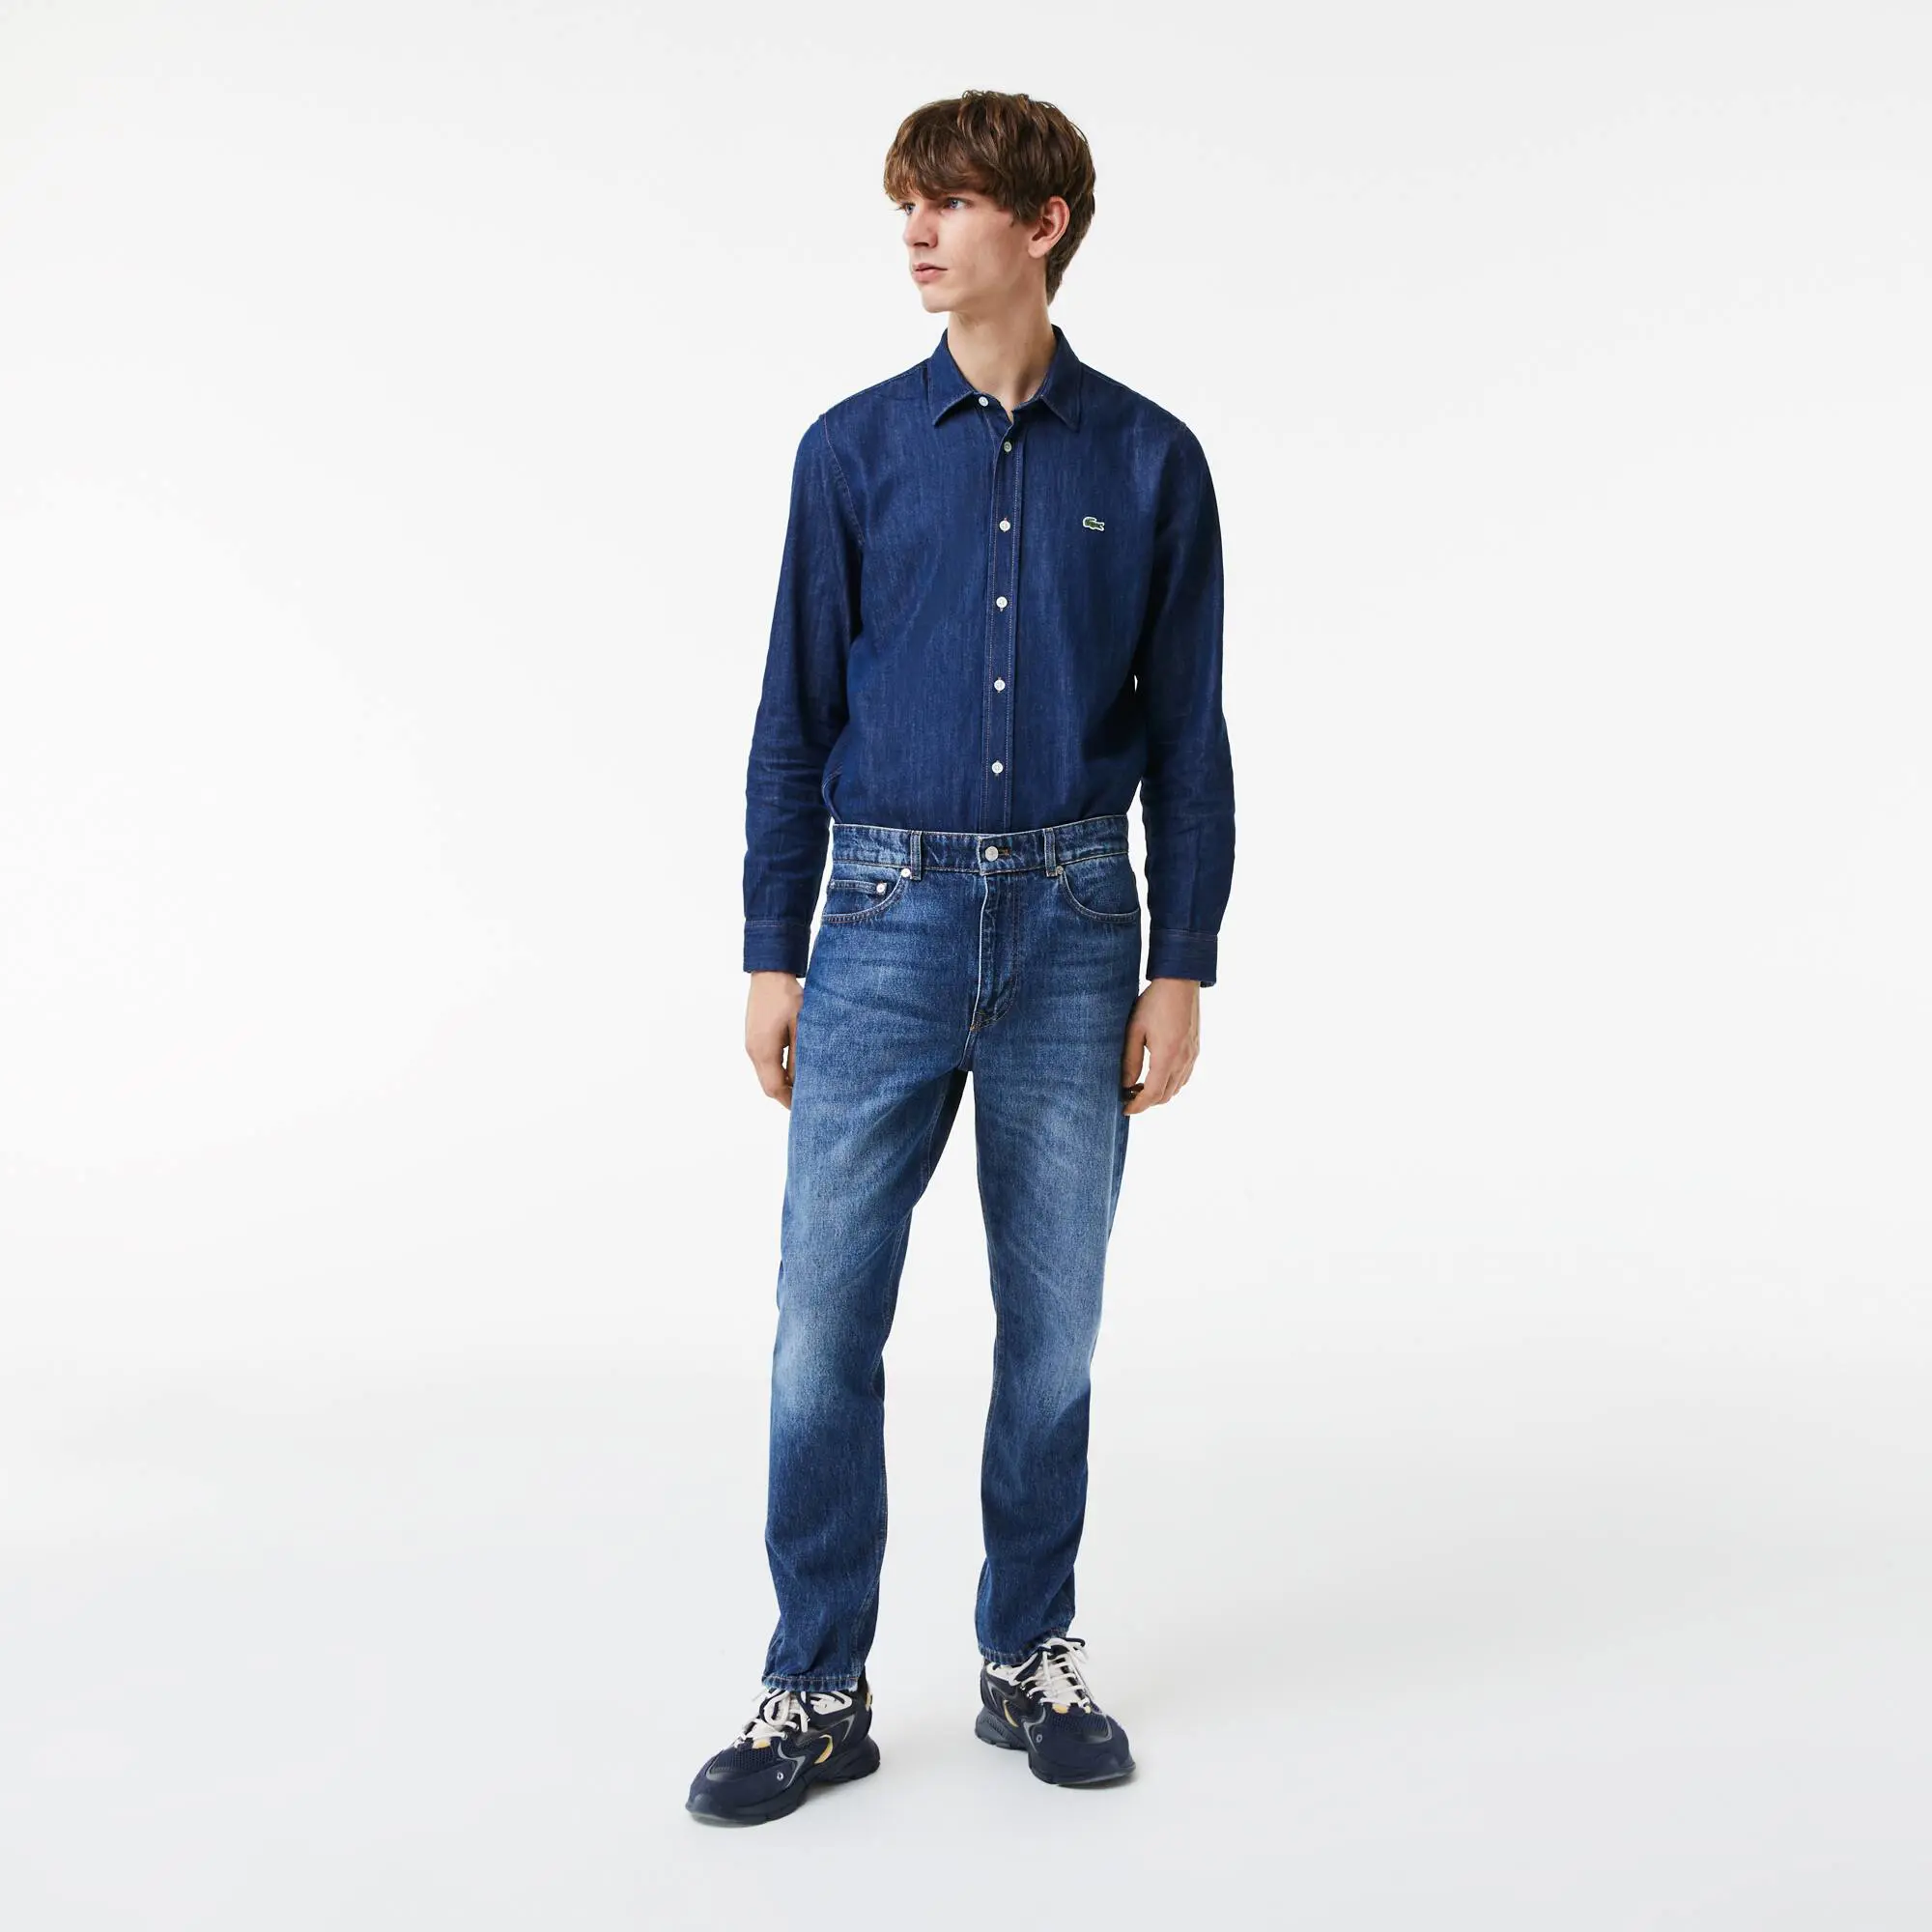 Lacoste Men's Lacoste Denim Cotton Five-Pocket Jeans. 1